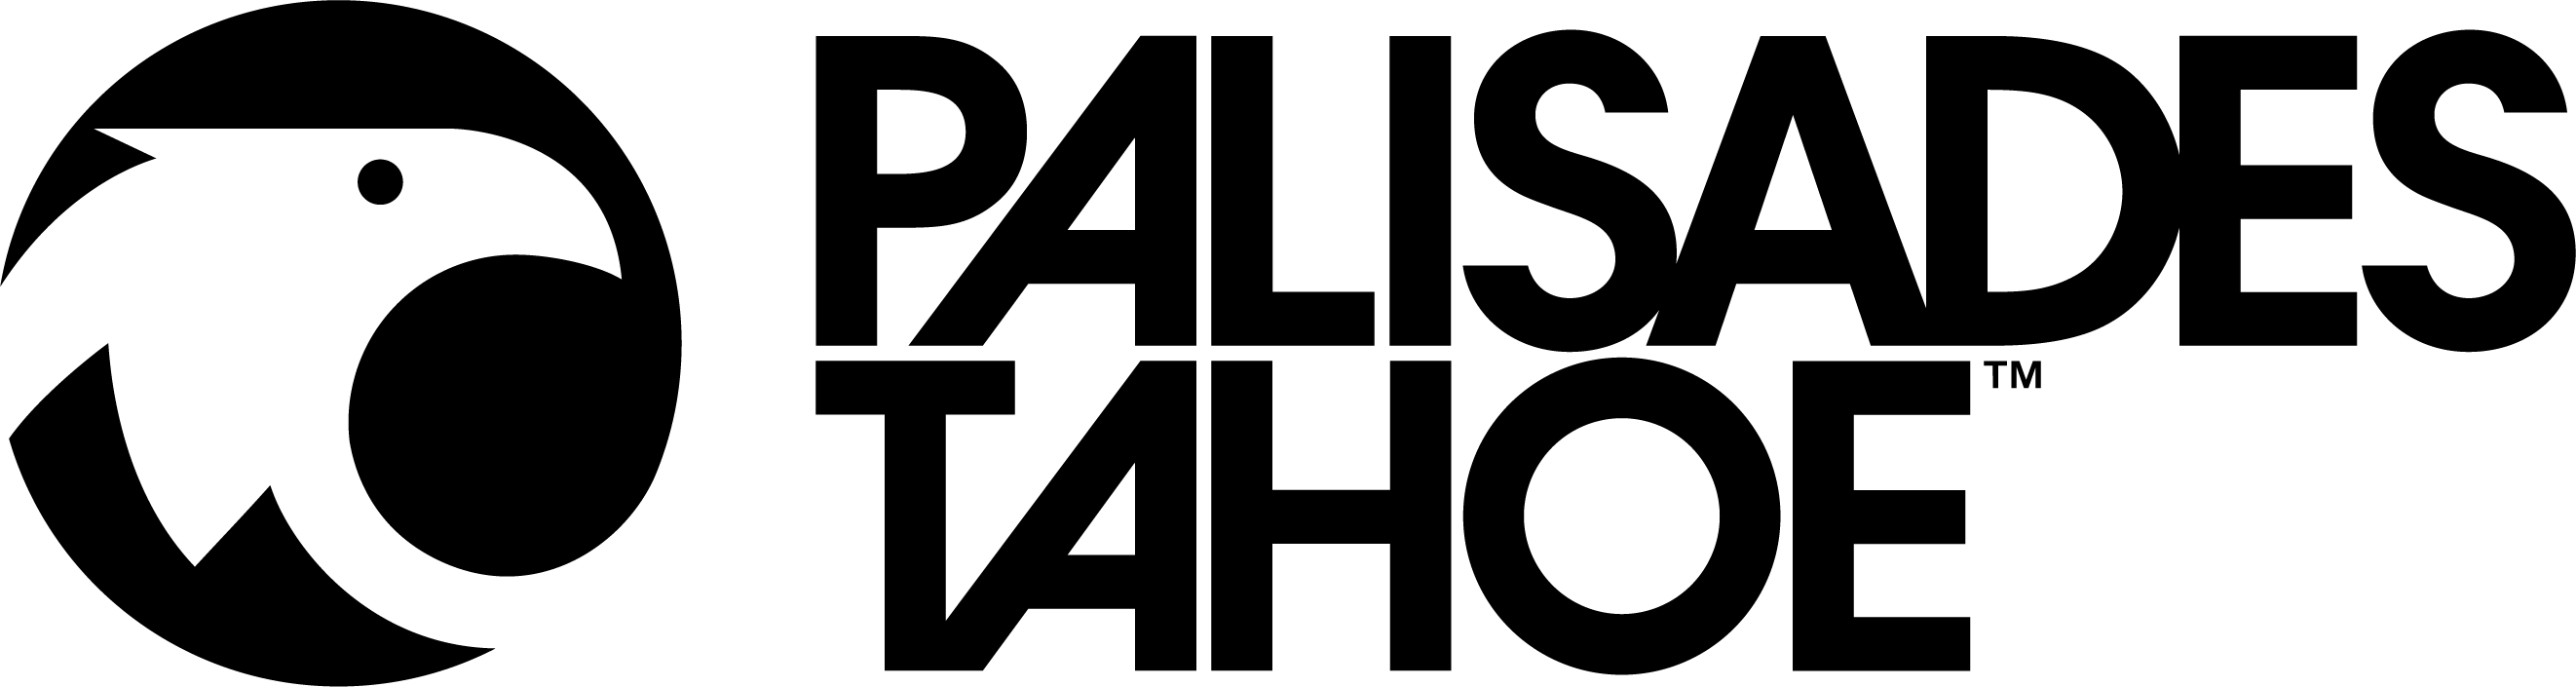 The Palisades Tahoe logo lockup.